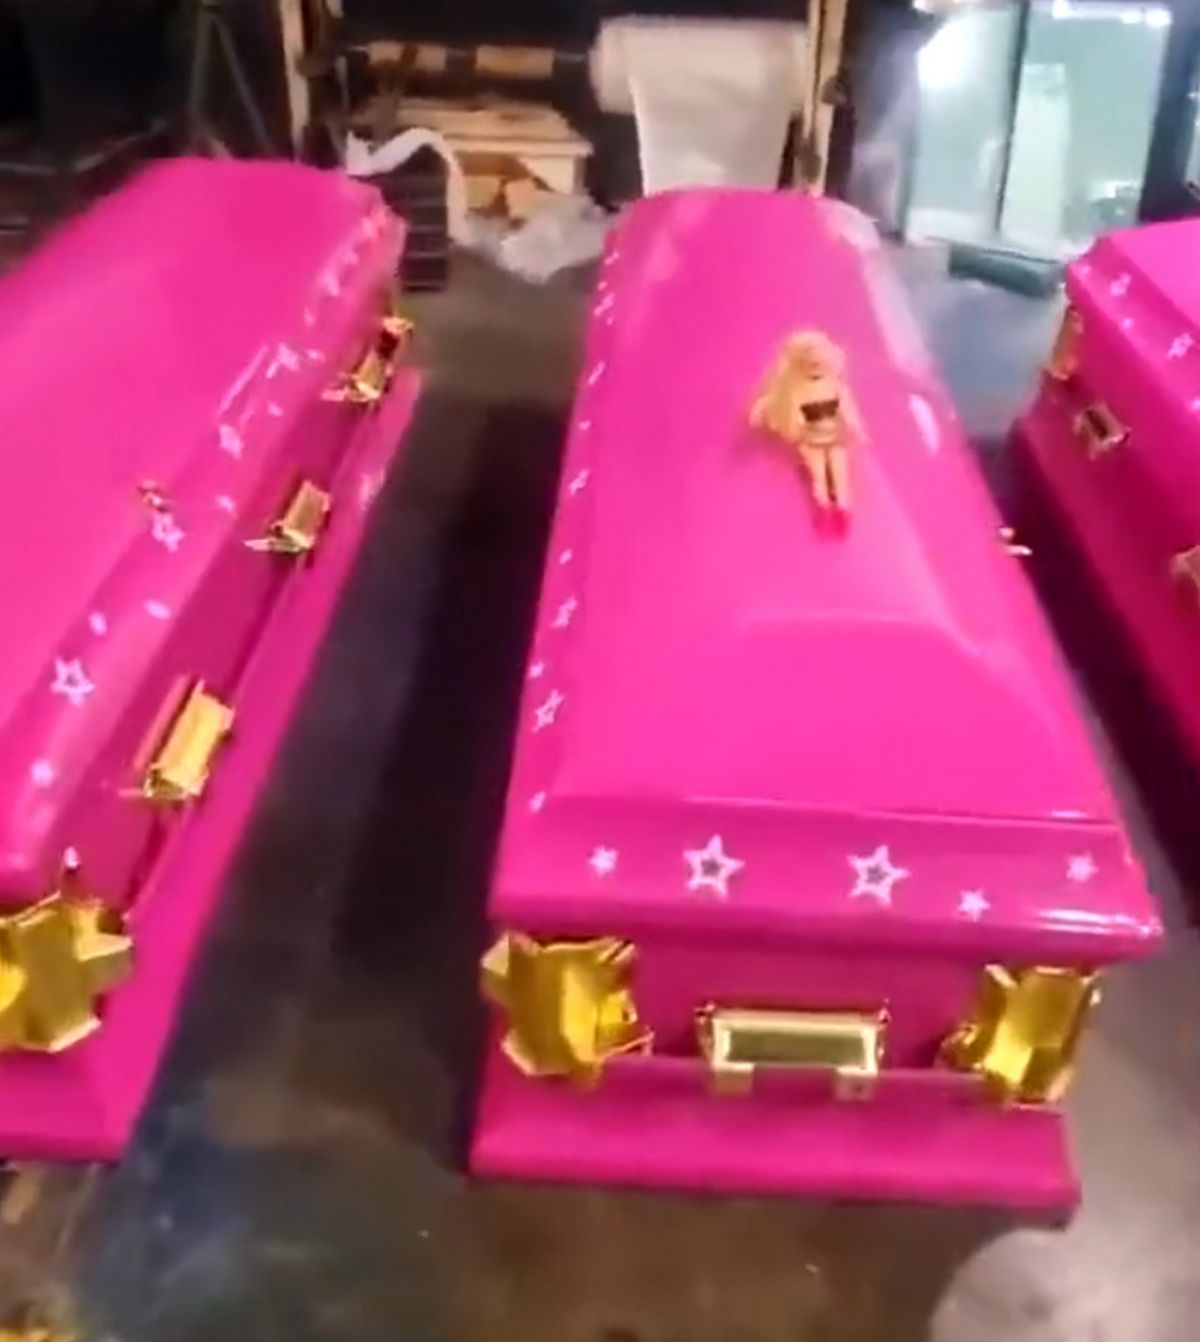 Les cercueils roses ont gagné en popularité après le succès du film Barbie.